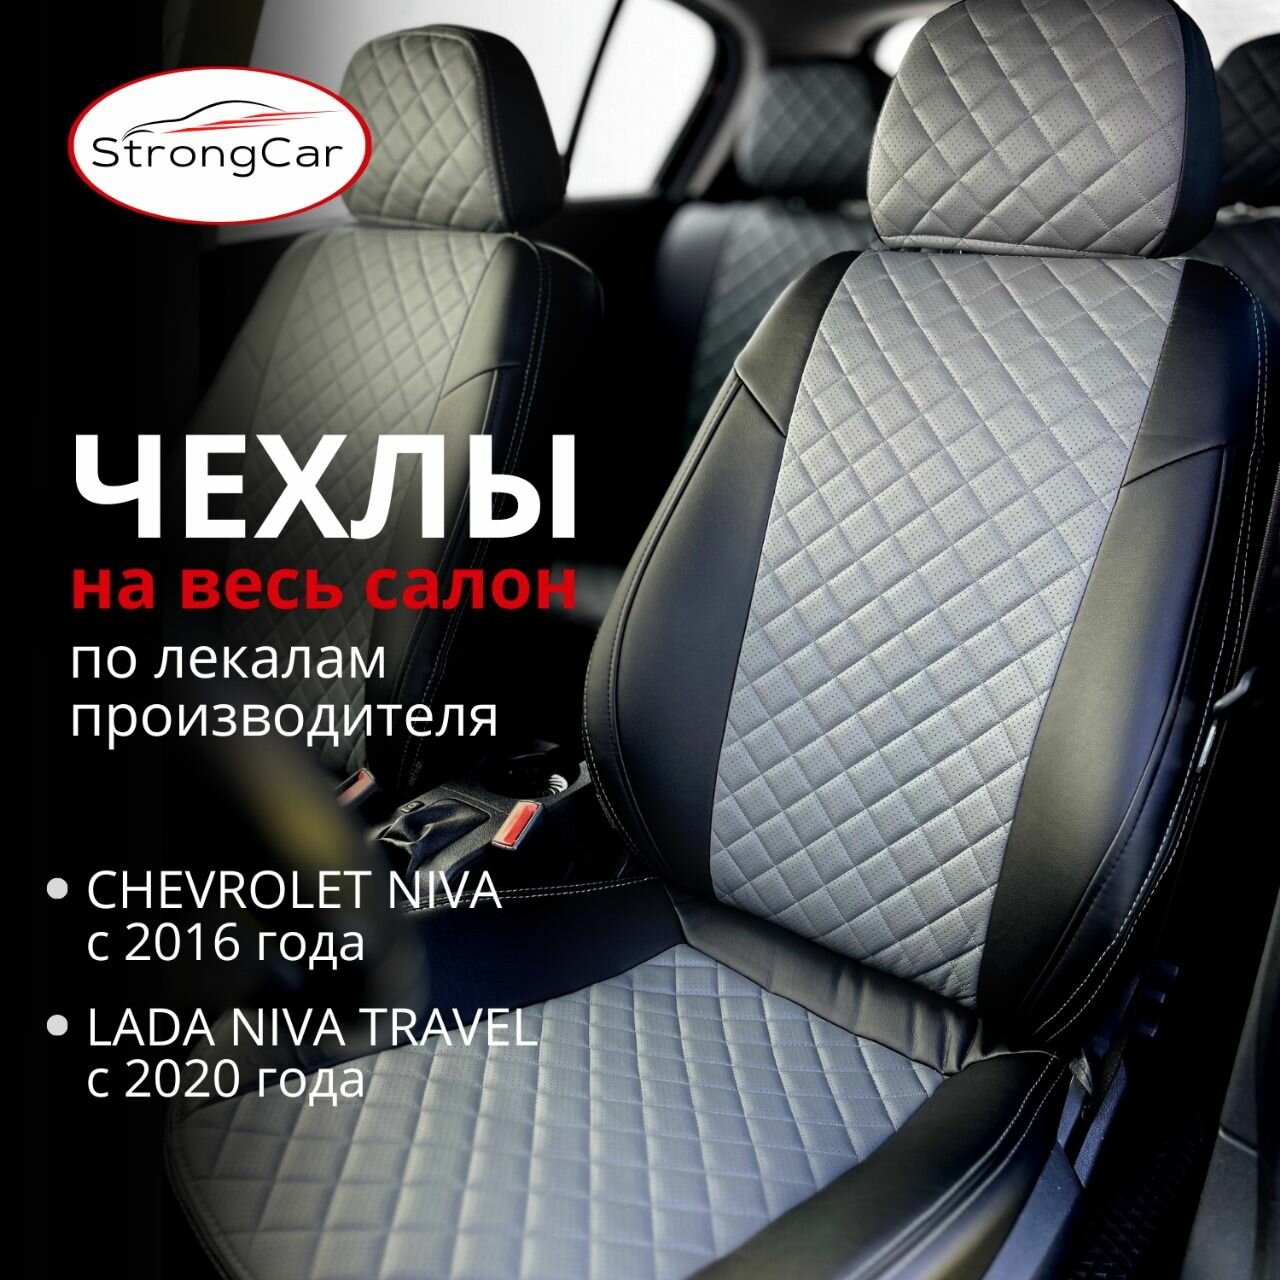 Комплект чехлов на сиденья автомобиля Chevrolet Niva, Lada Niva Travel